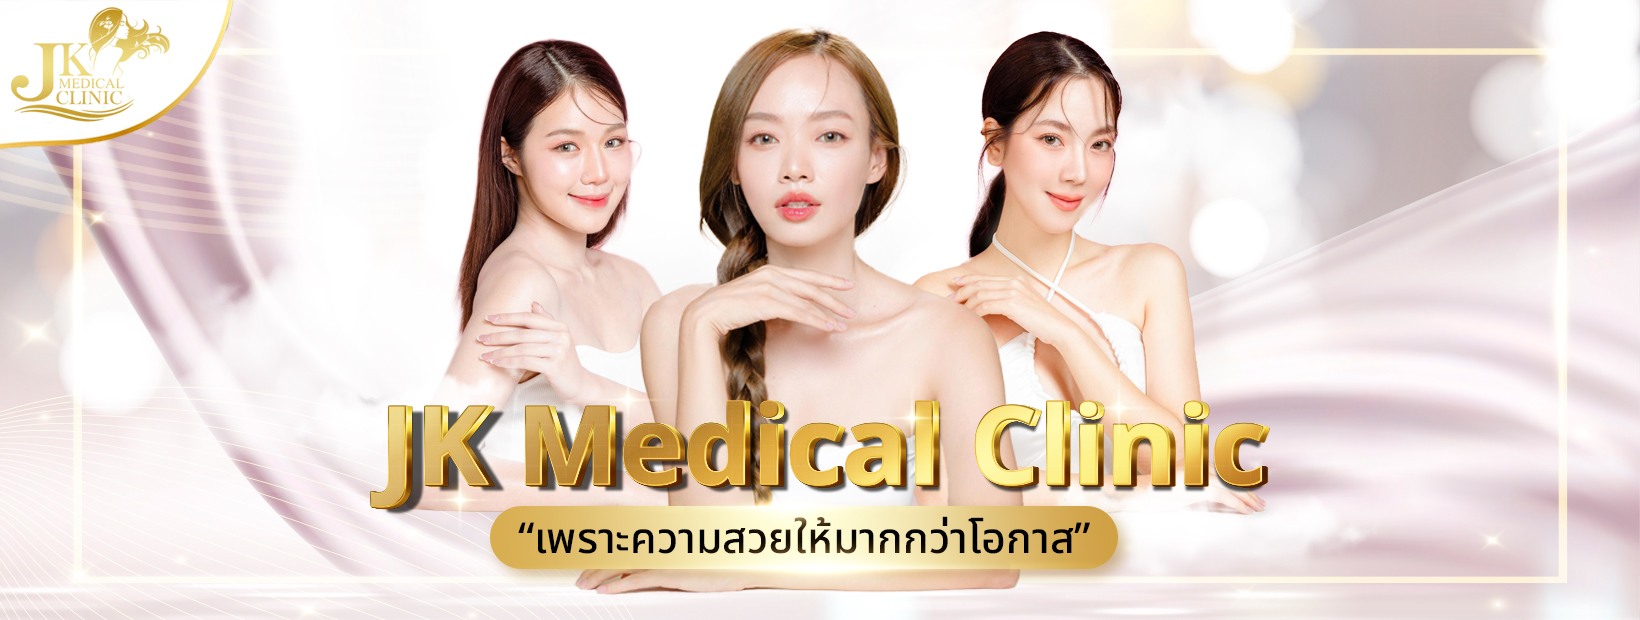 JK Medical Clinic